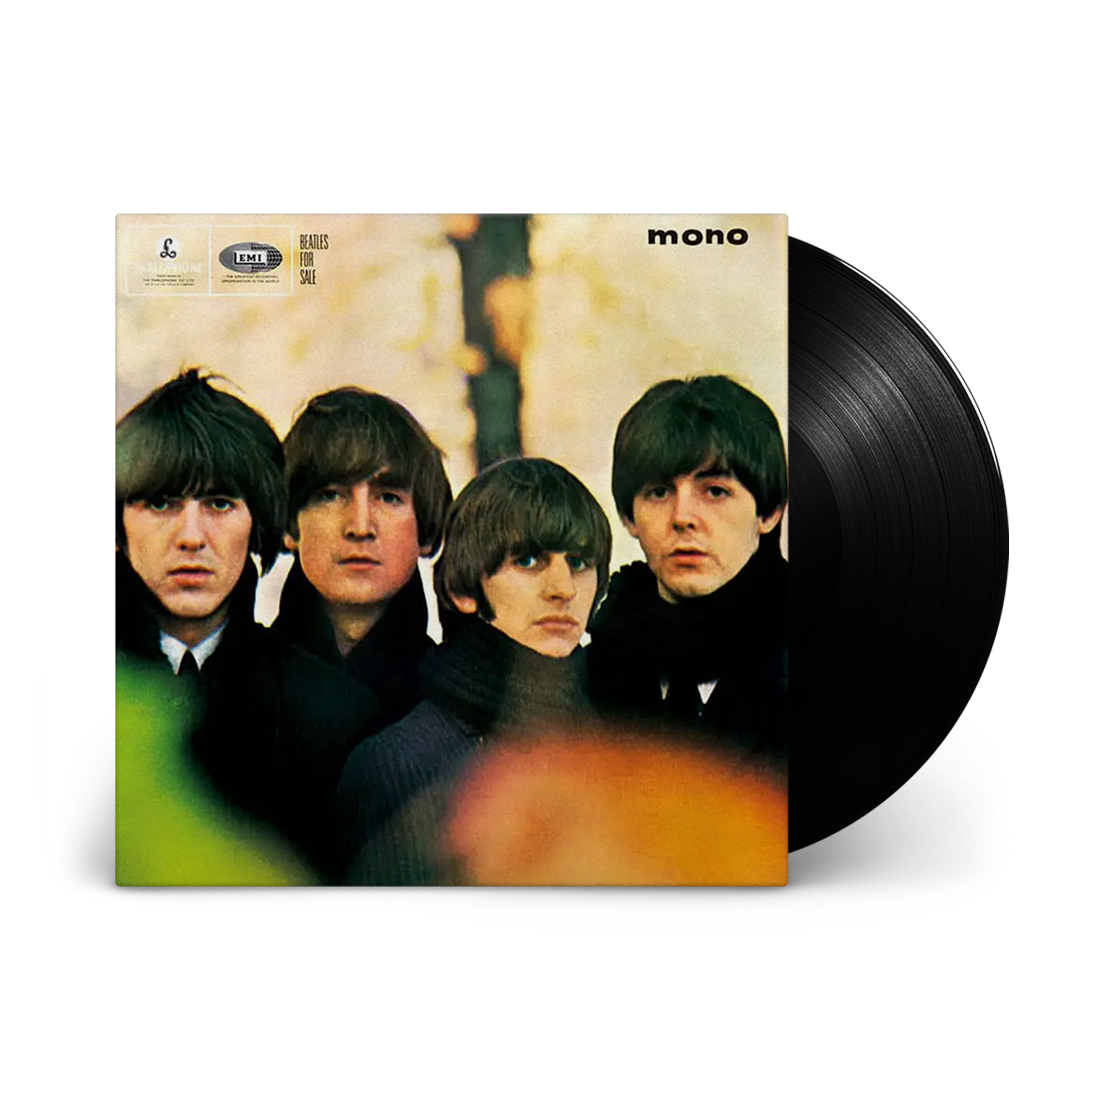 The Beatles - Beatles For Sale (Stereo 180 Gram Vinyl)